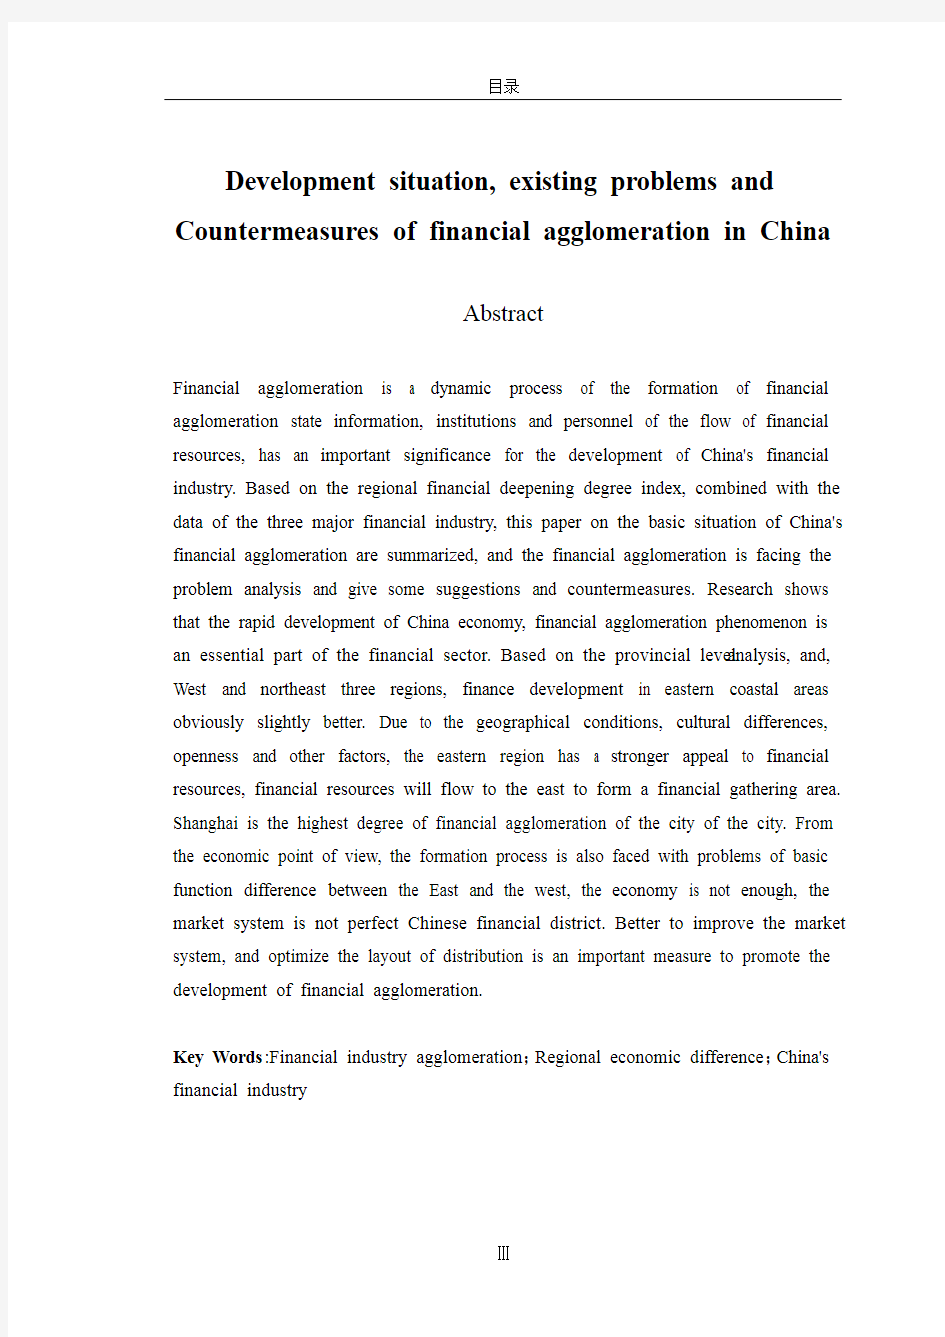 中国金融集聚的发展现状、存在的问题及对策分析